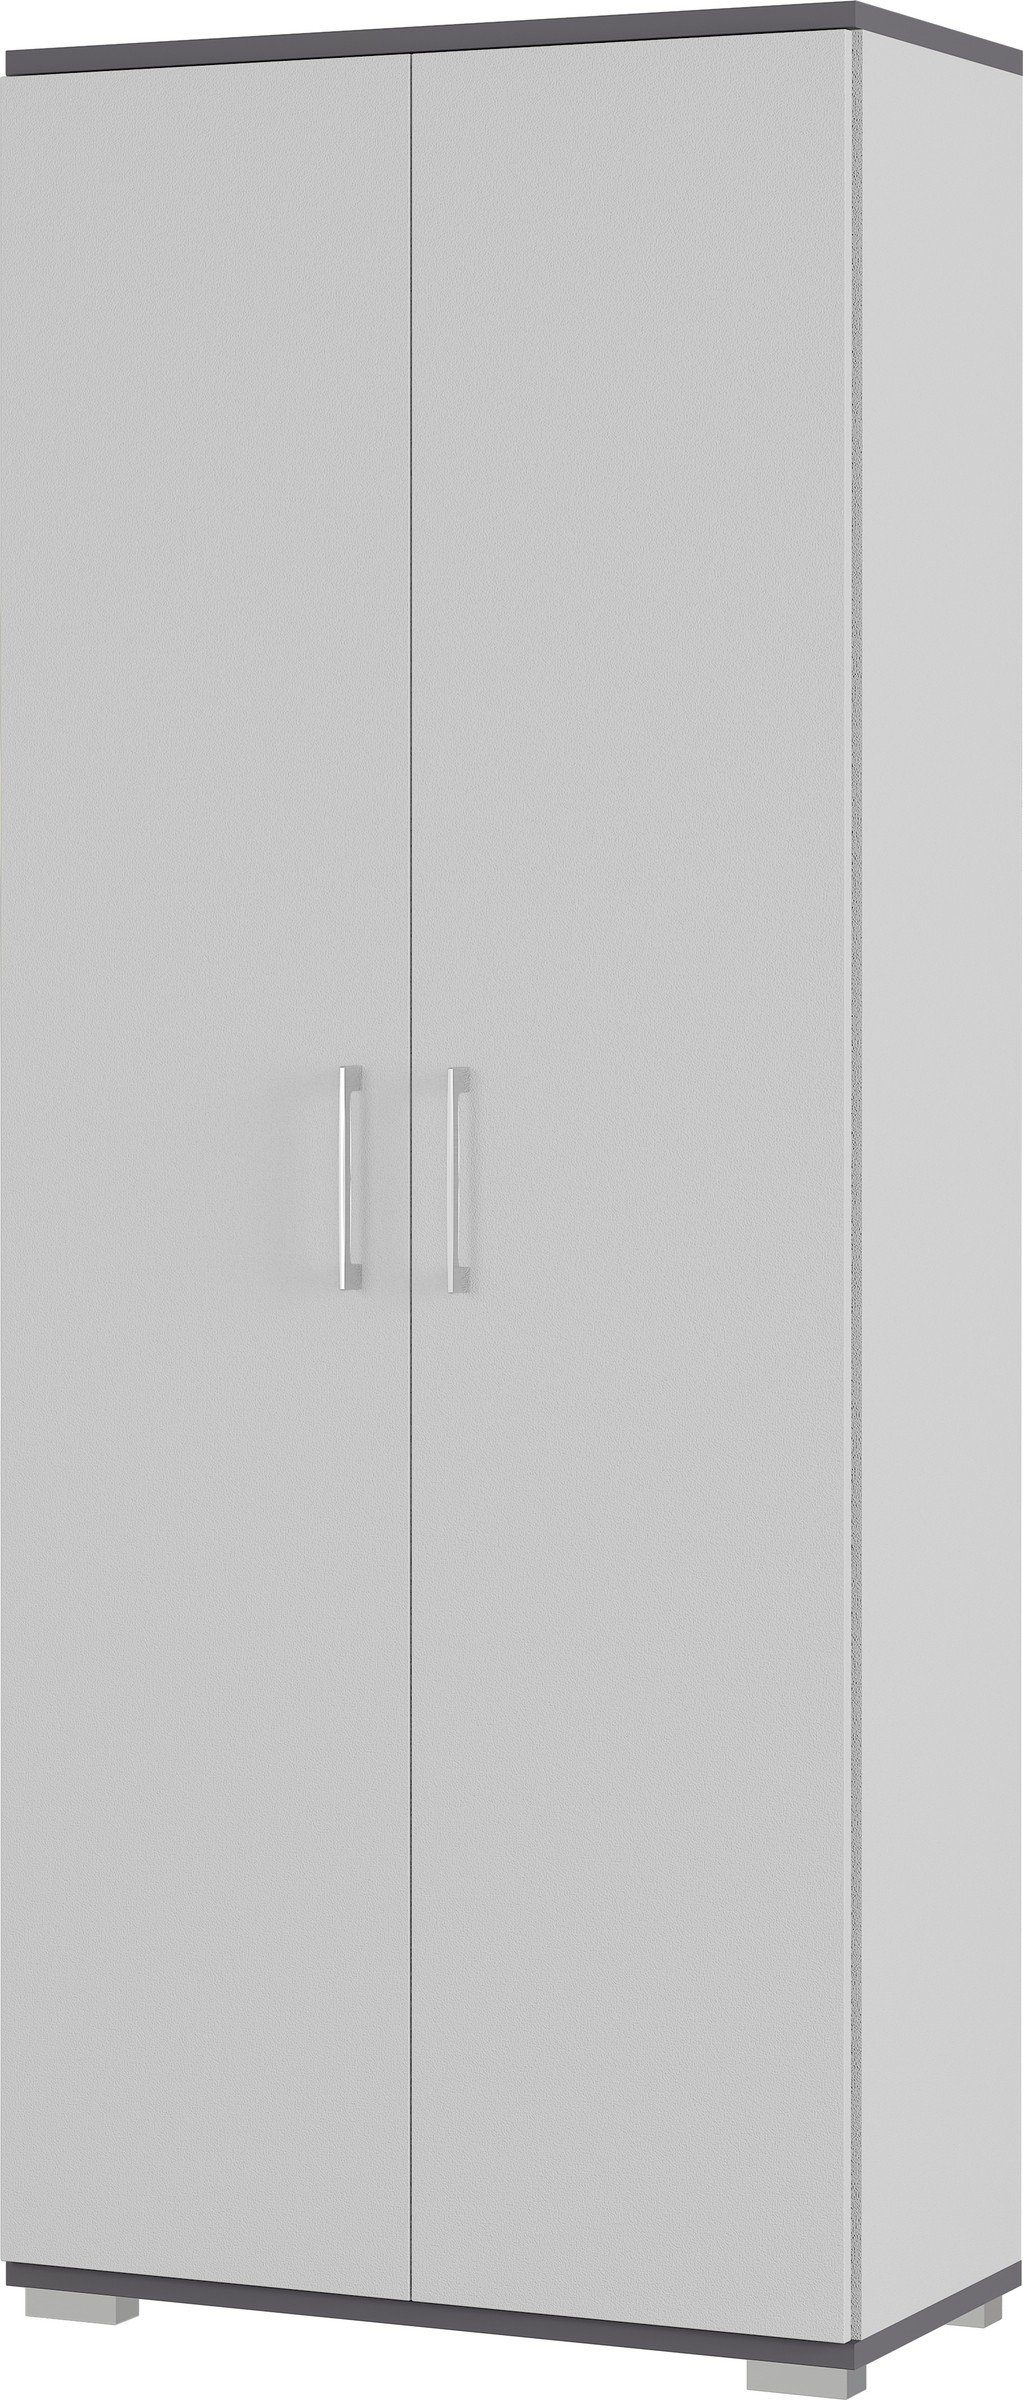 Einlegeböden anthrazit möbelando 80x200x40 416 cm) Türen 4 2 grau, mit in Aktenschrank und (BxHxT: